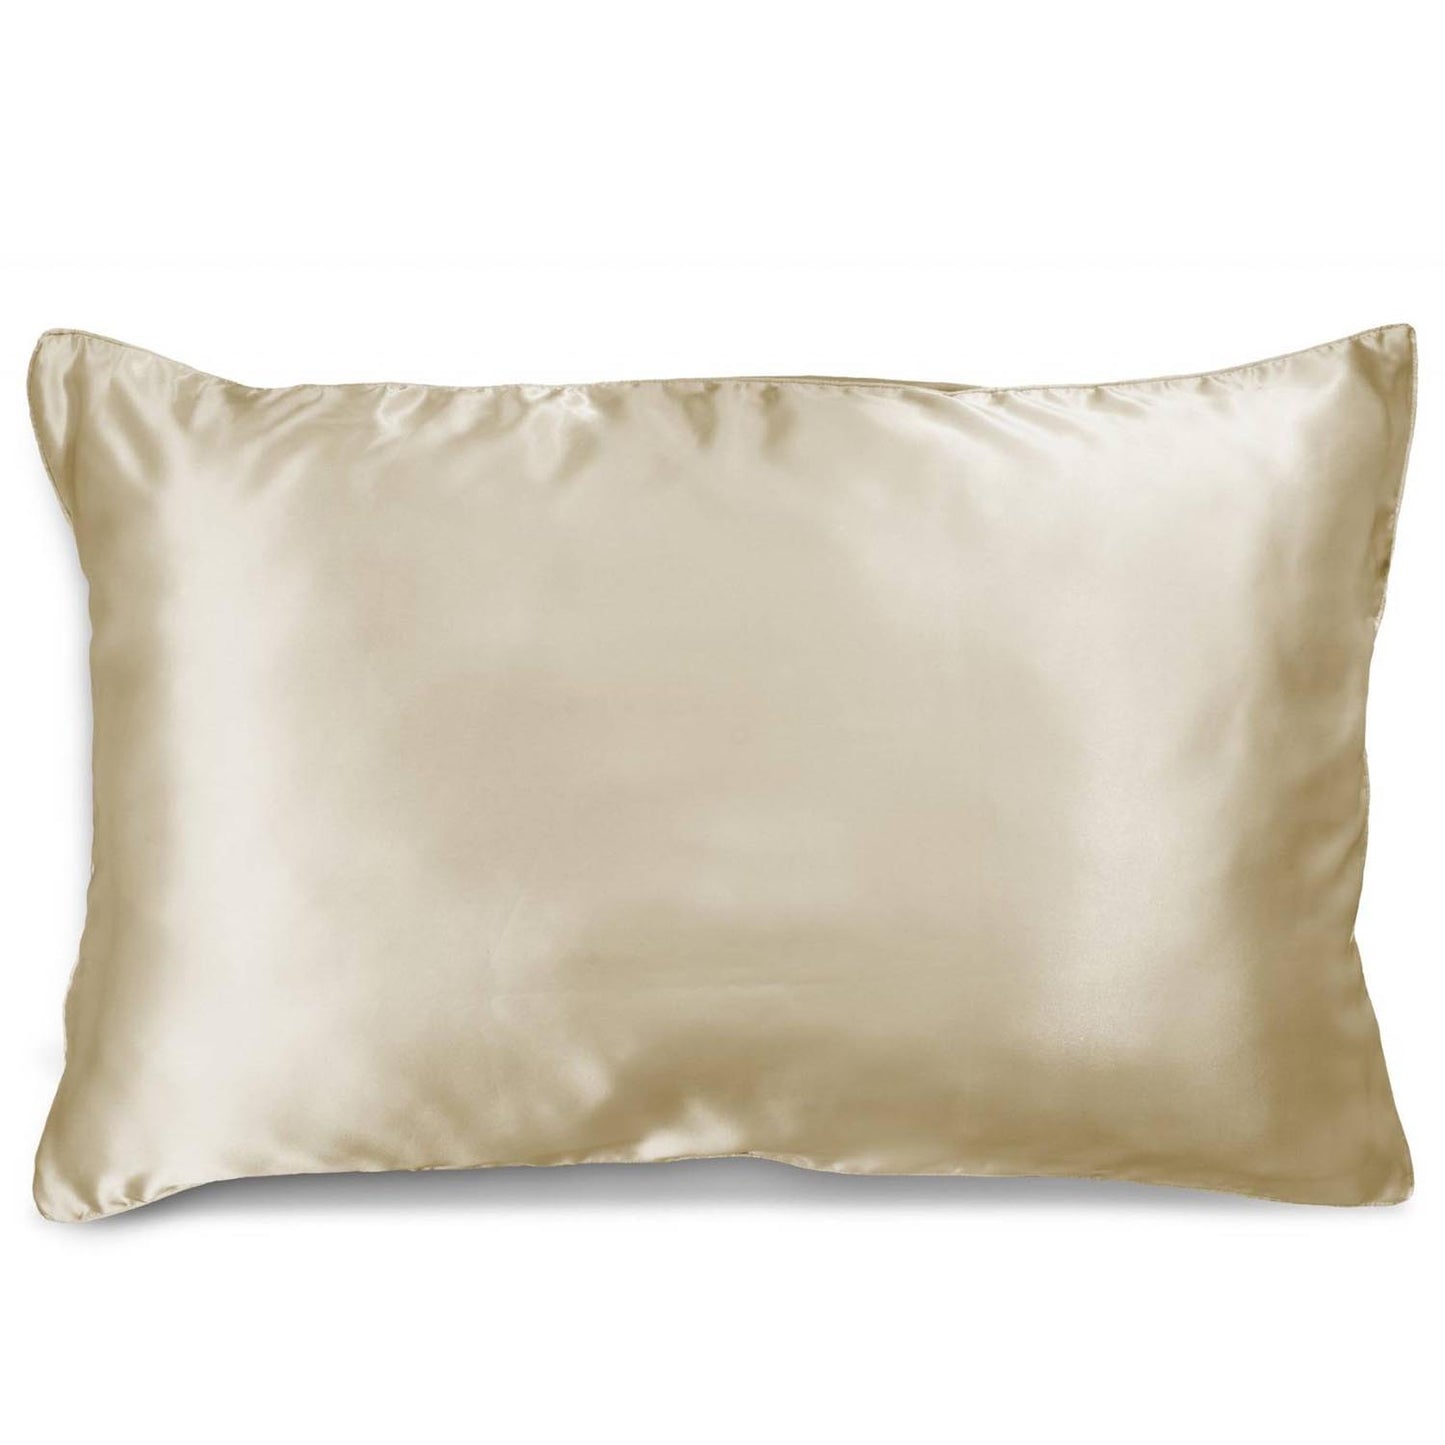 Mulberry Silk Pillowcase- Golden Princess by Ardor